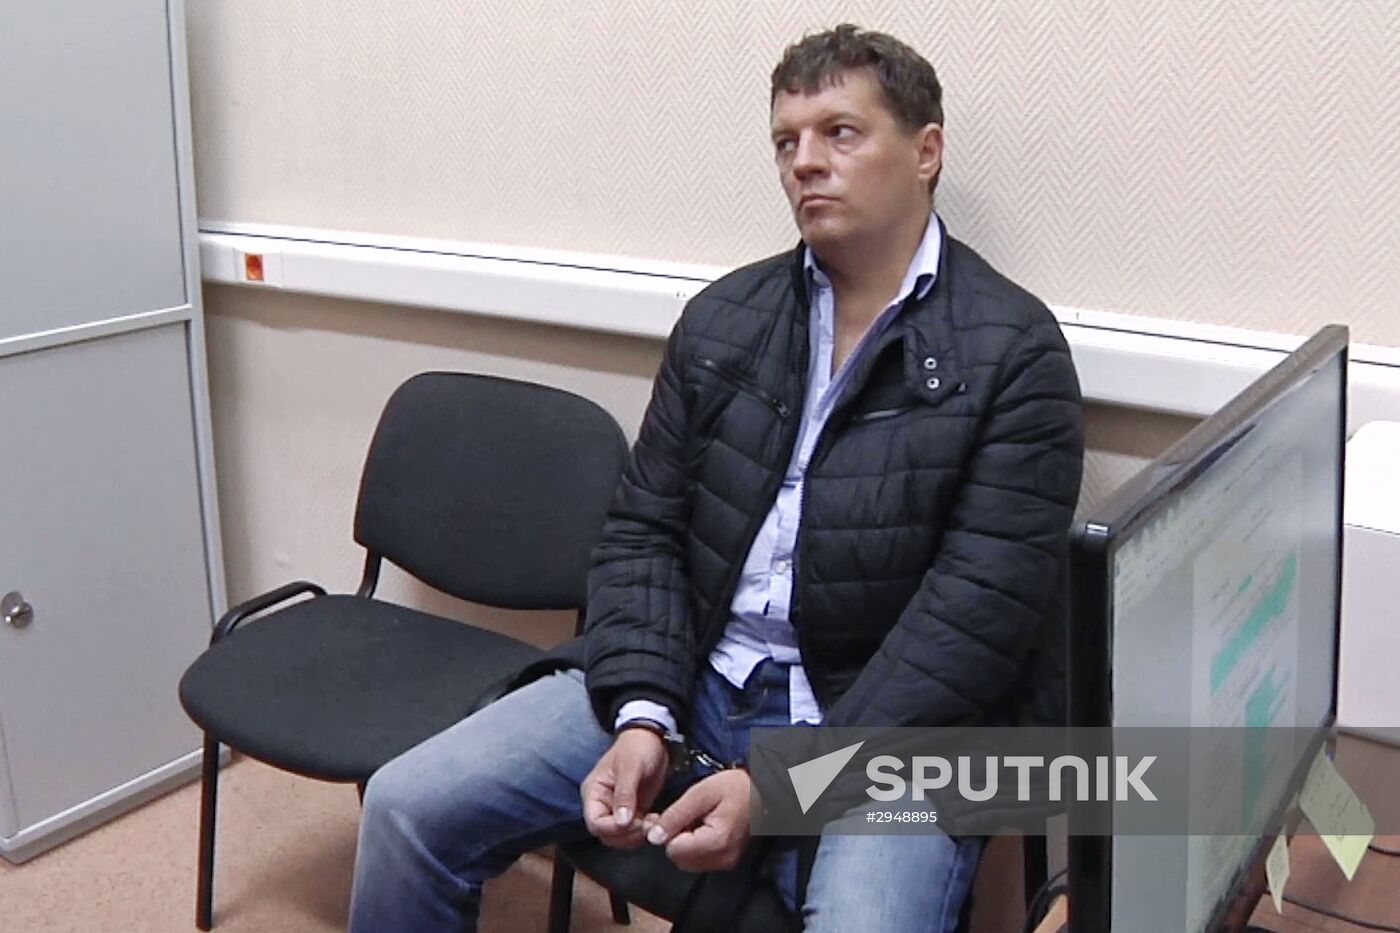 FSB detains Ukraine's Roman Sushchenko on suspicion of espionage